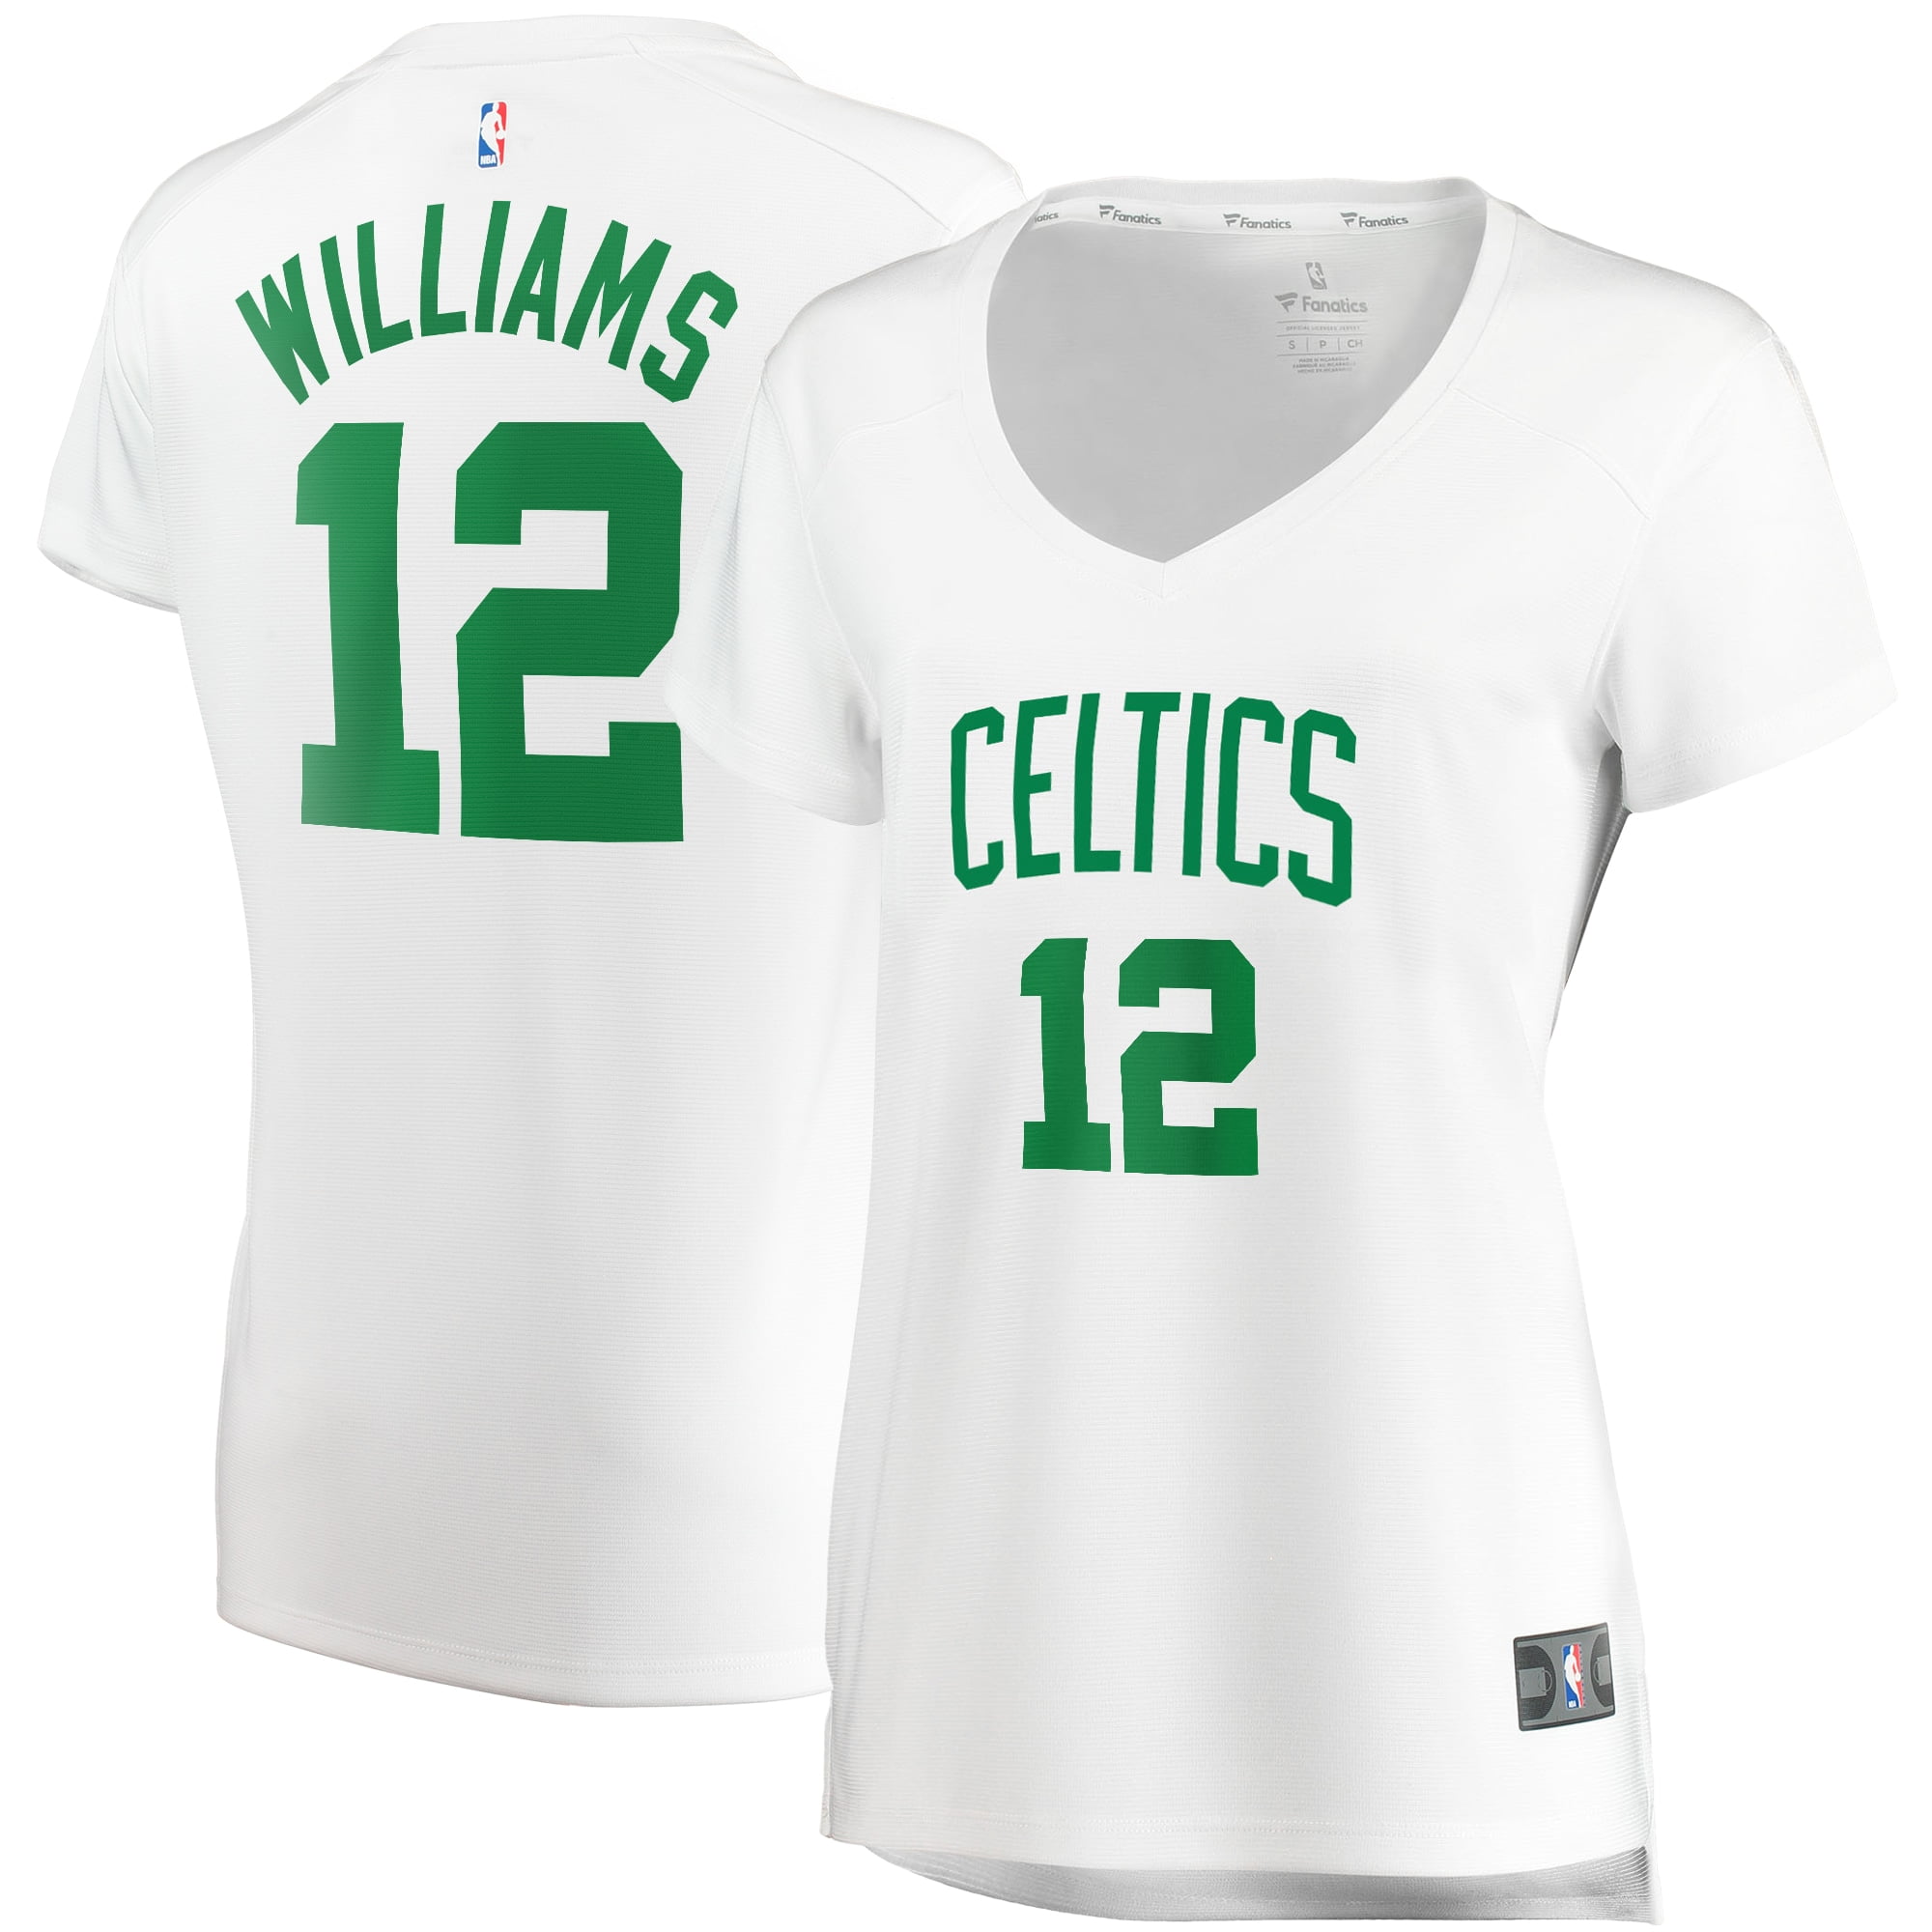 grant williams boston celtics jersey